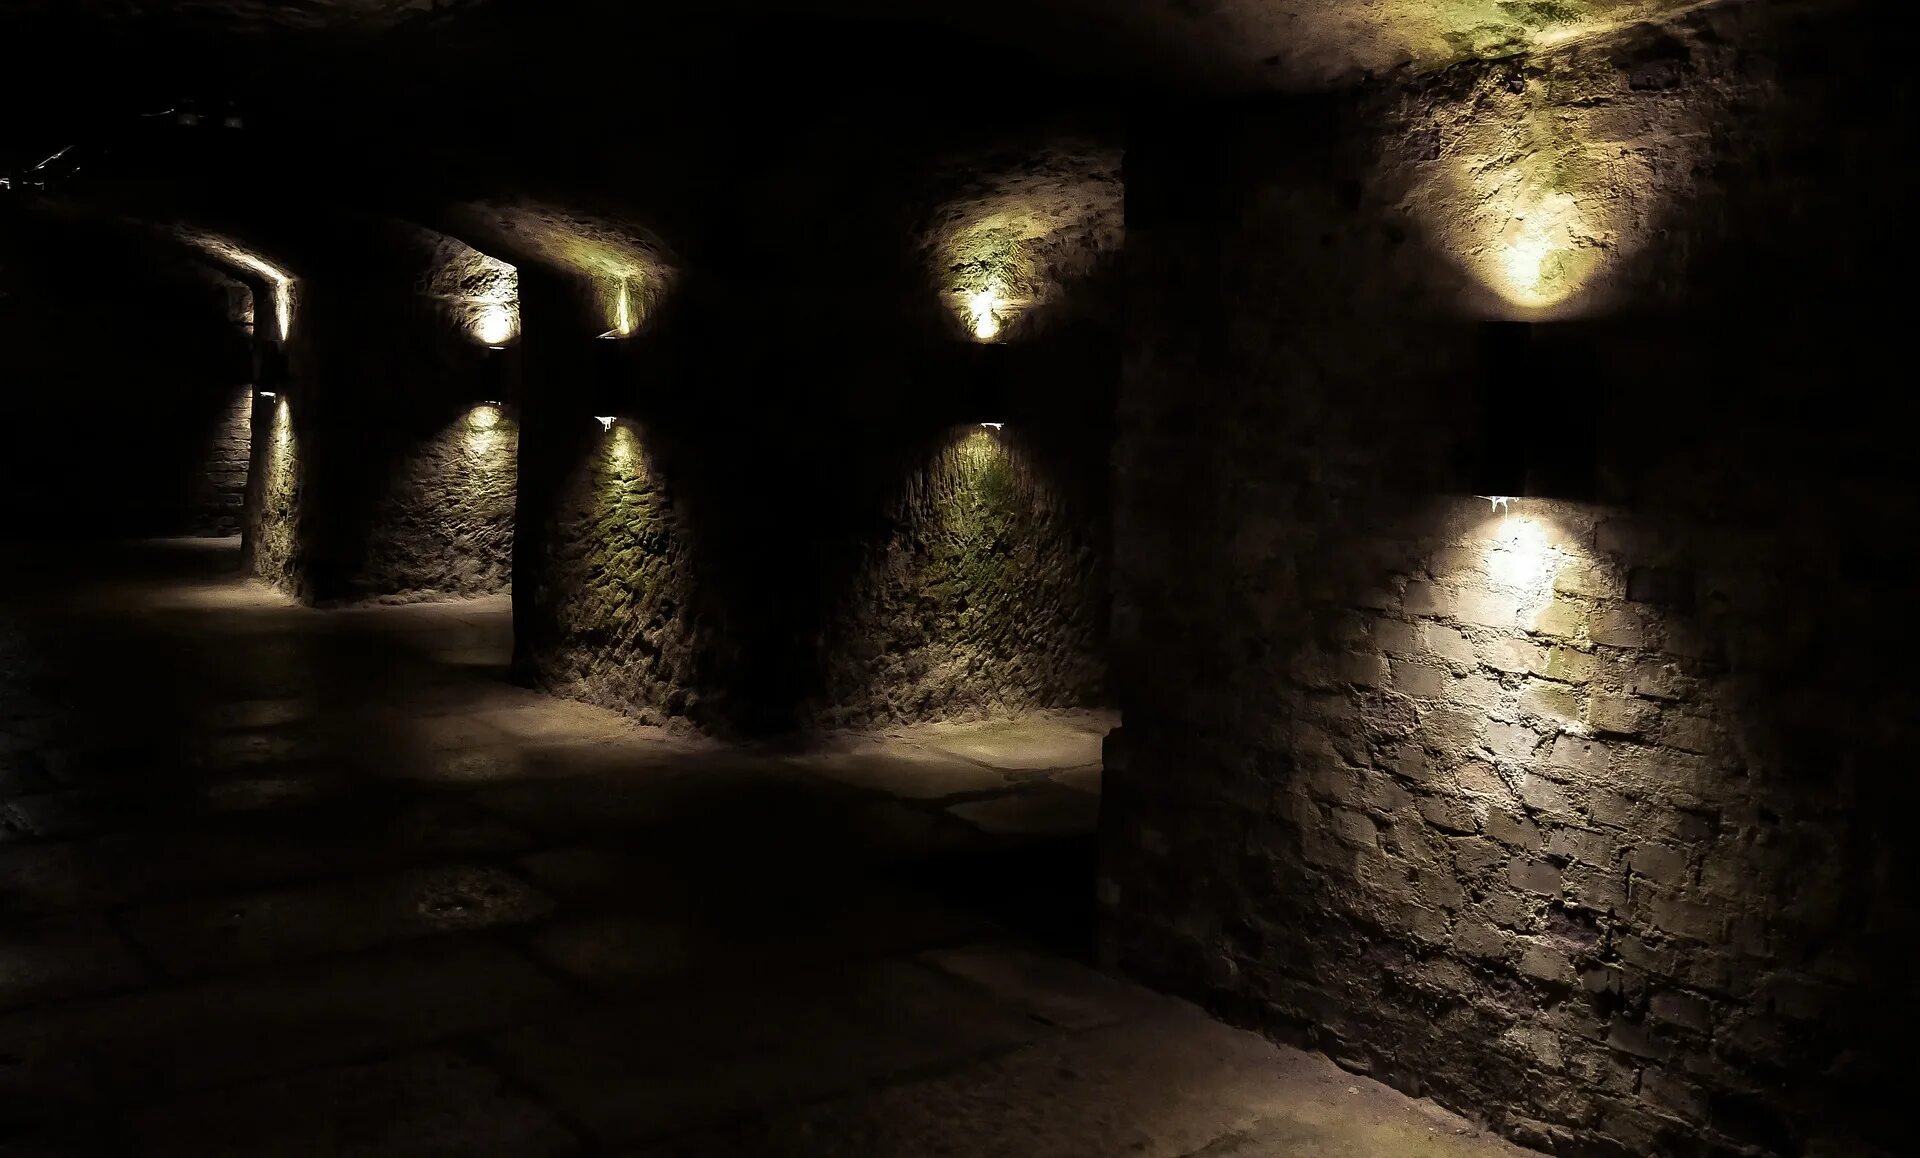 Загадочная стена. Мистическая стена. Стена подвала ночью. Туннель проход на Рамаду. Направо и налево чернели таинственные пропасти